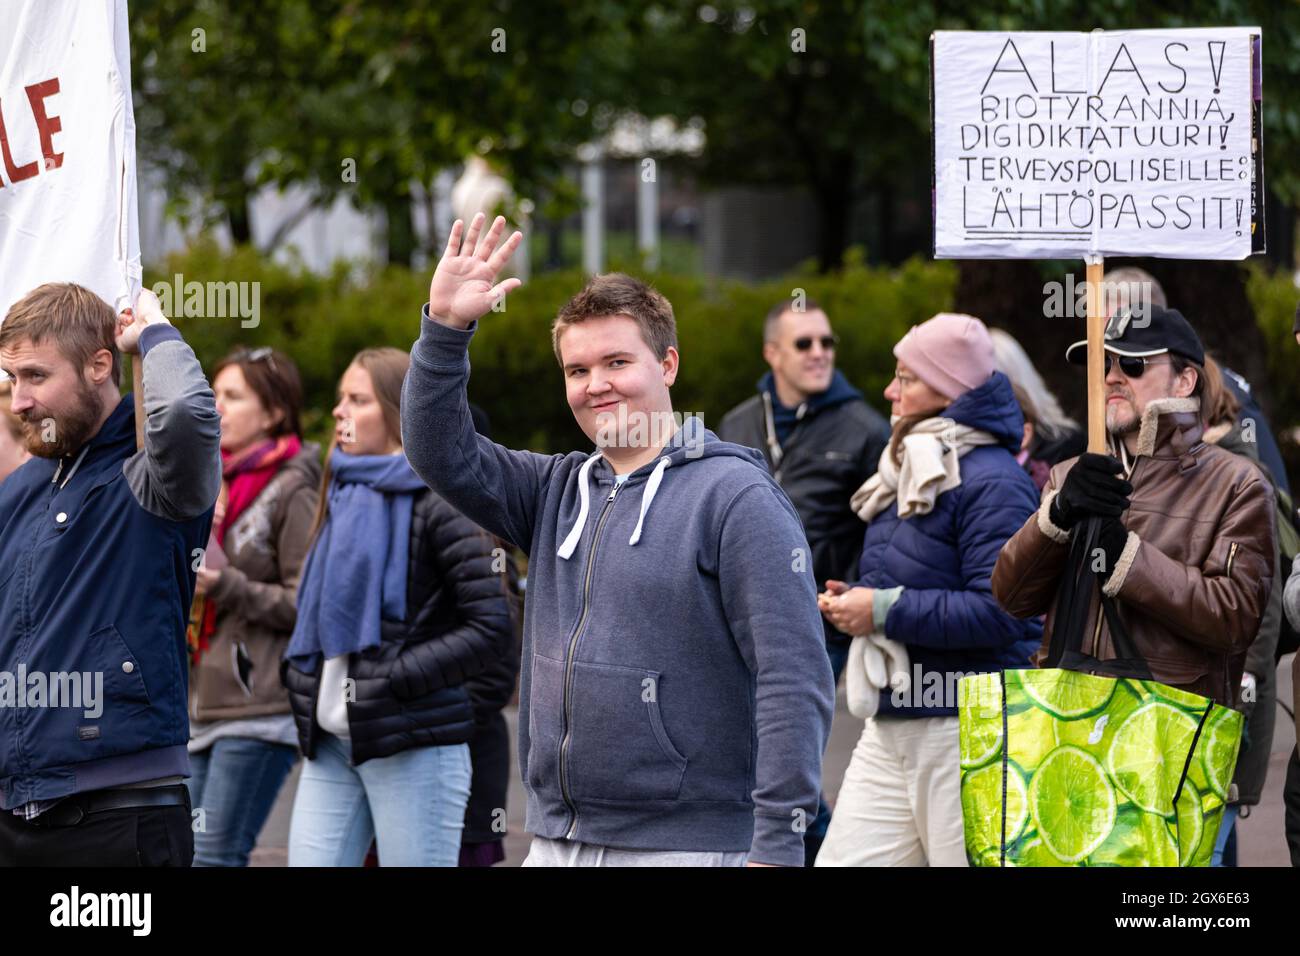 Le persone che si marciano a dimostrazione contro la vaccinazione dei bambini e l'introduzione dei passaporti di Covid a Helsinki, Finlandia Foto Stock